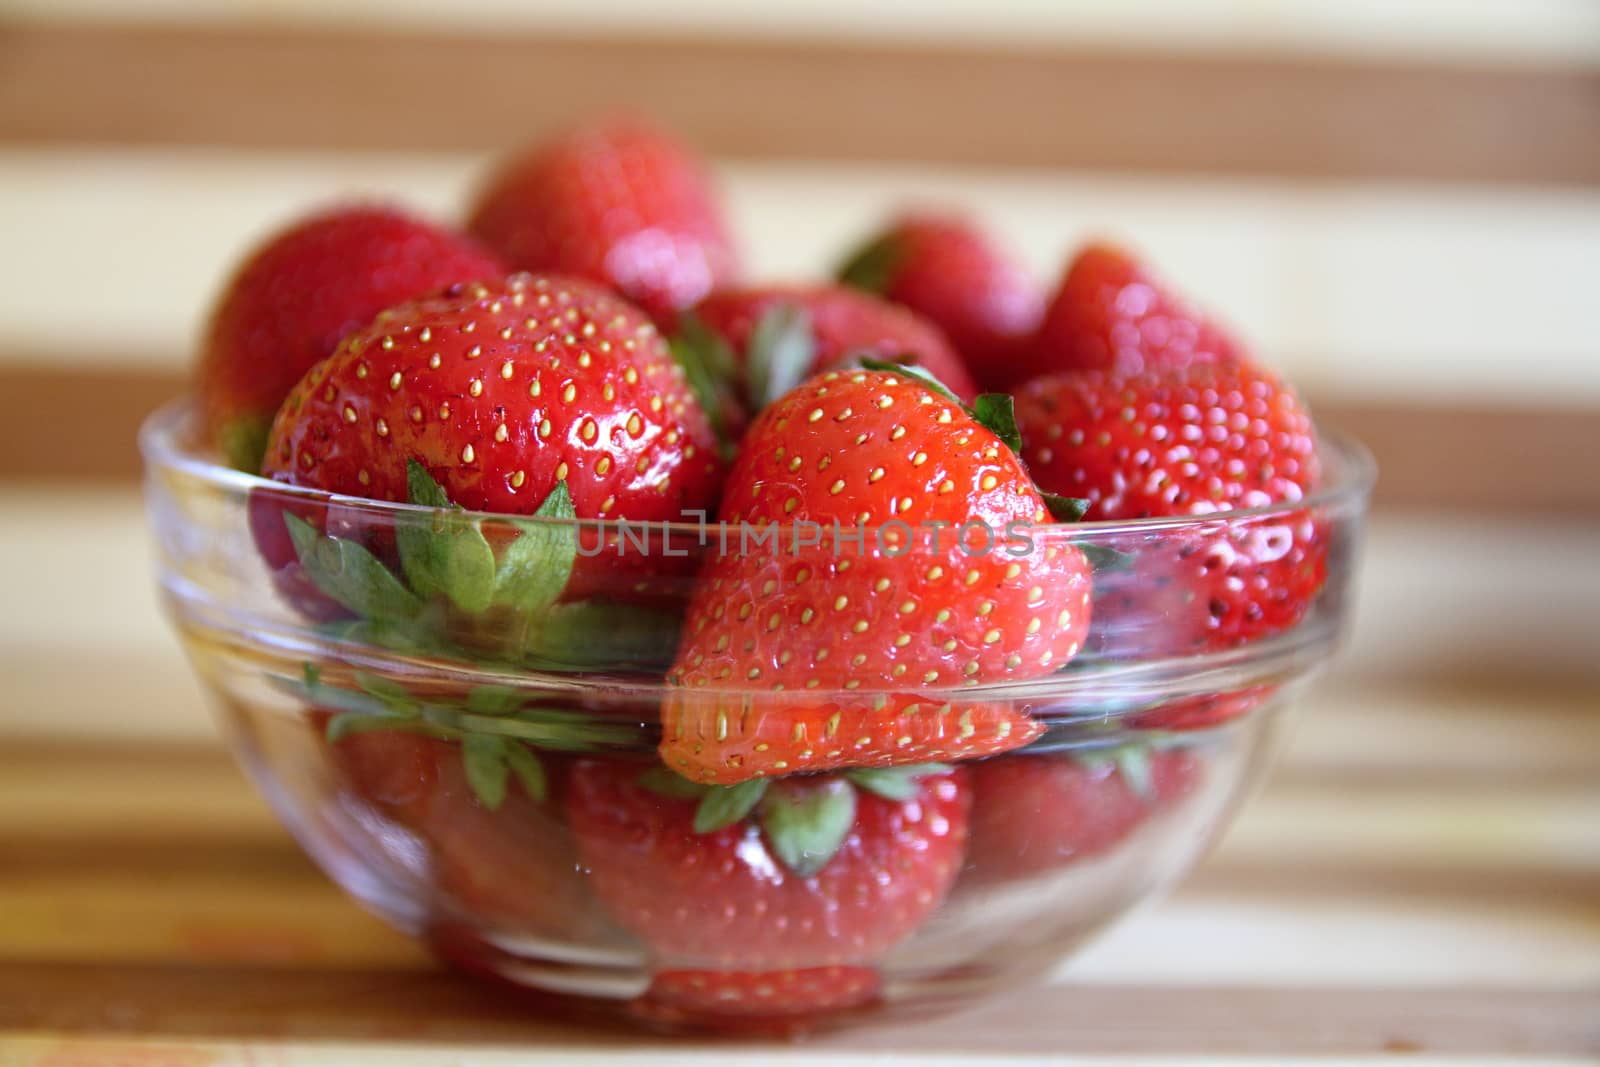 Strawberry dessert by ppawel